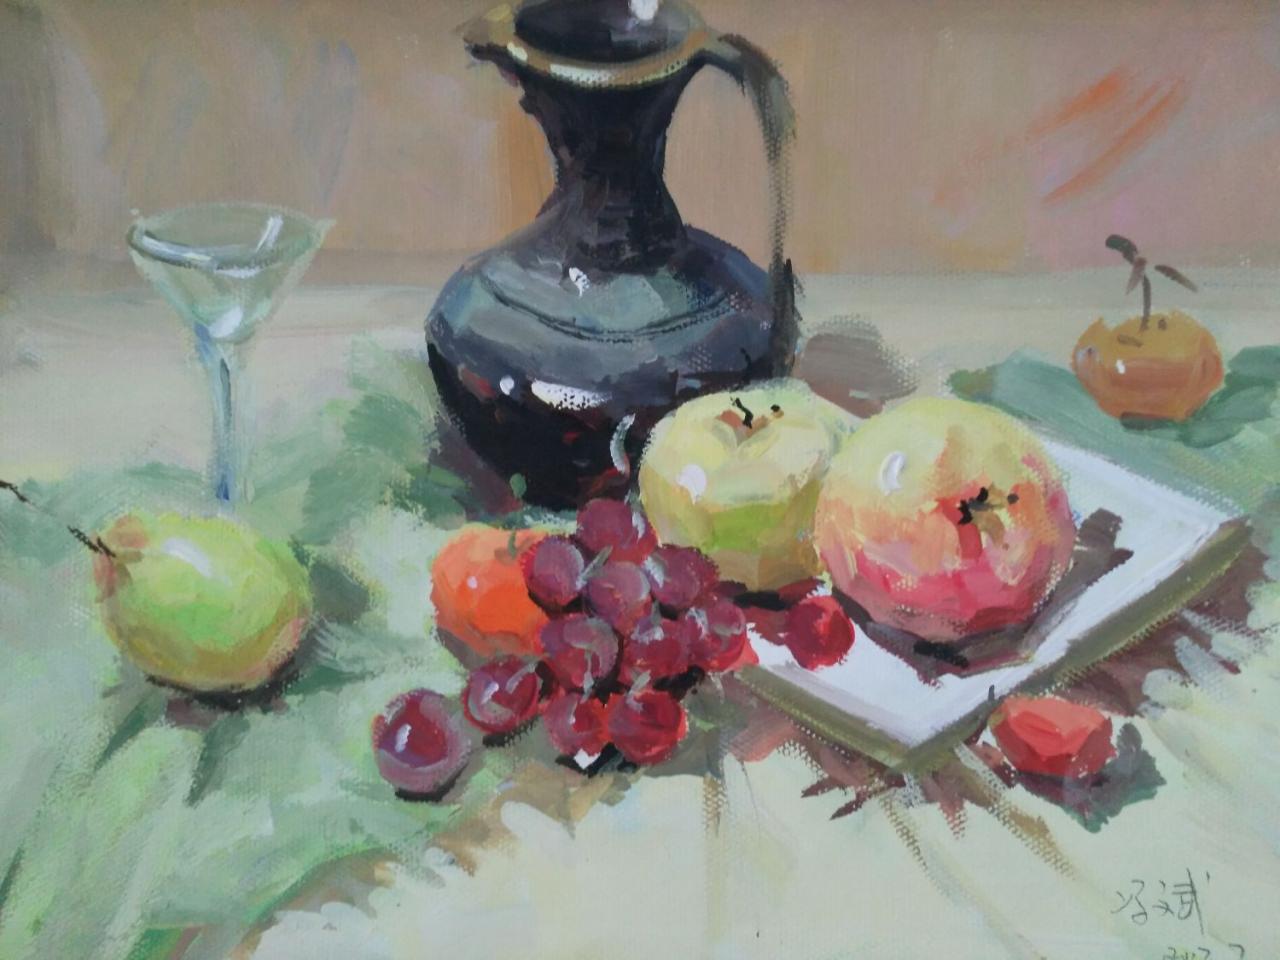 水粉静物 水壶、苹果、葡萄、玻璃杯、盘子等 冯斌画